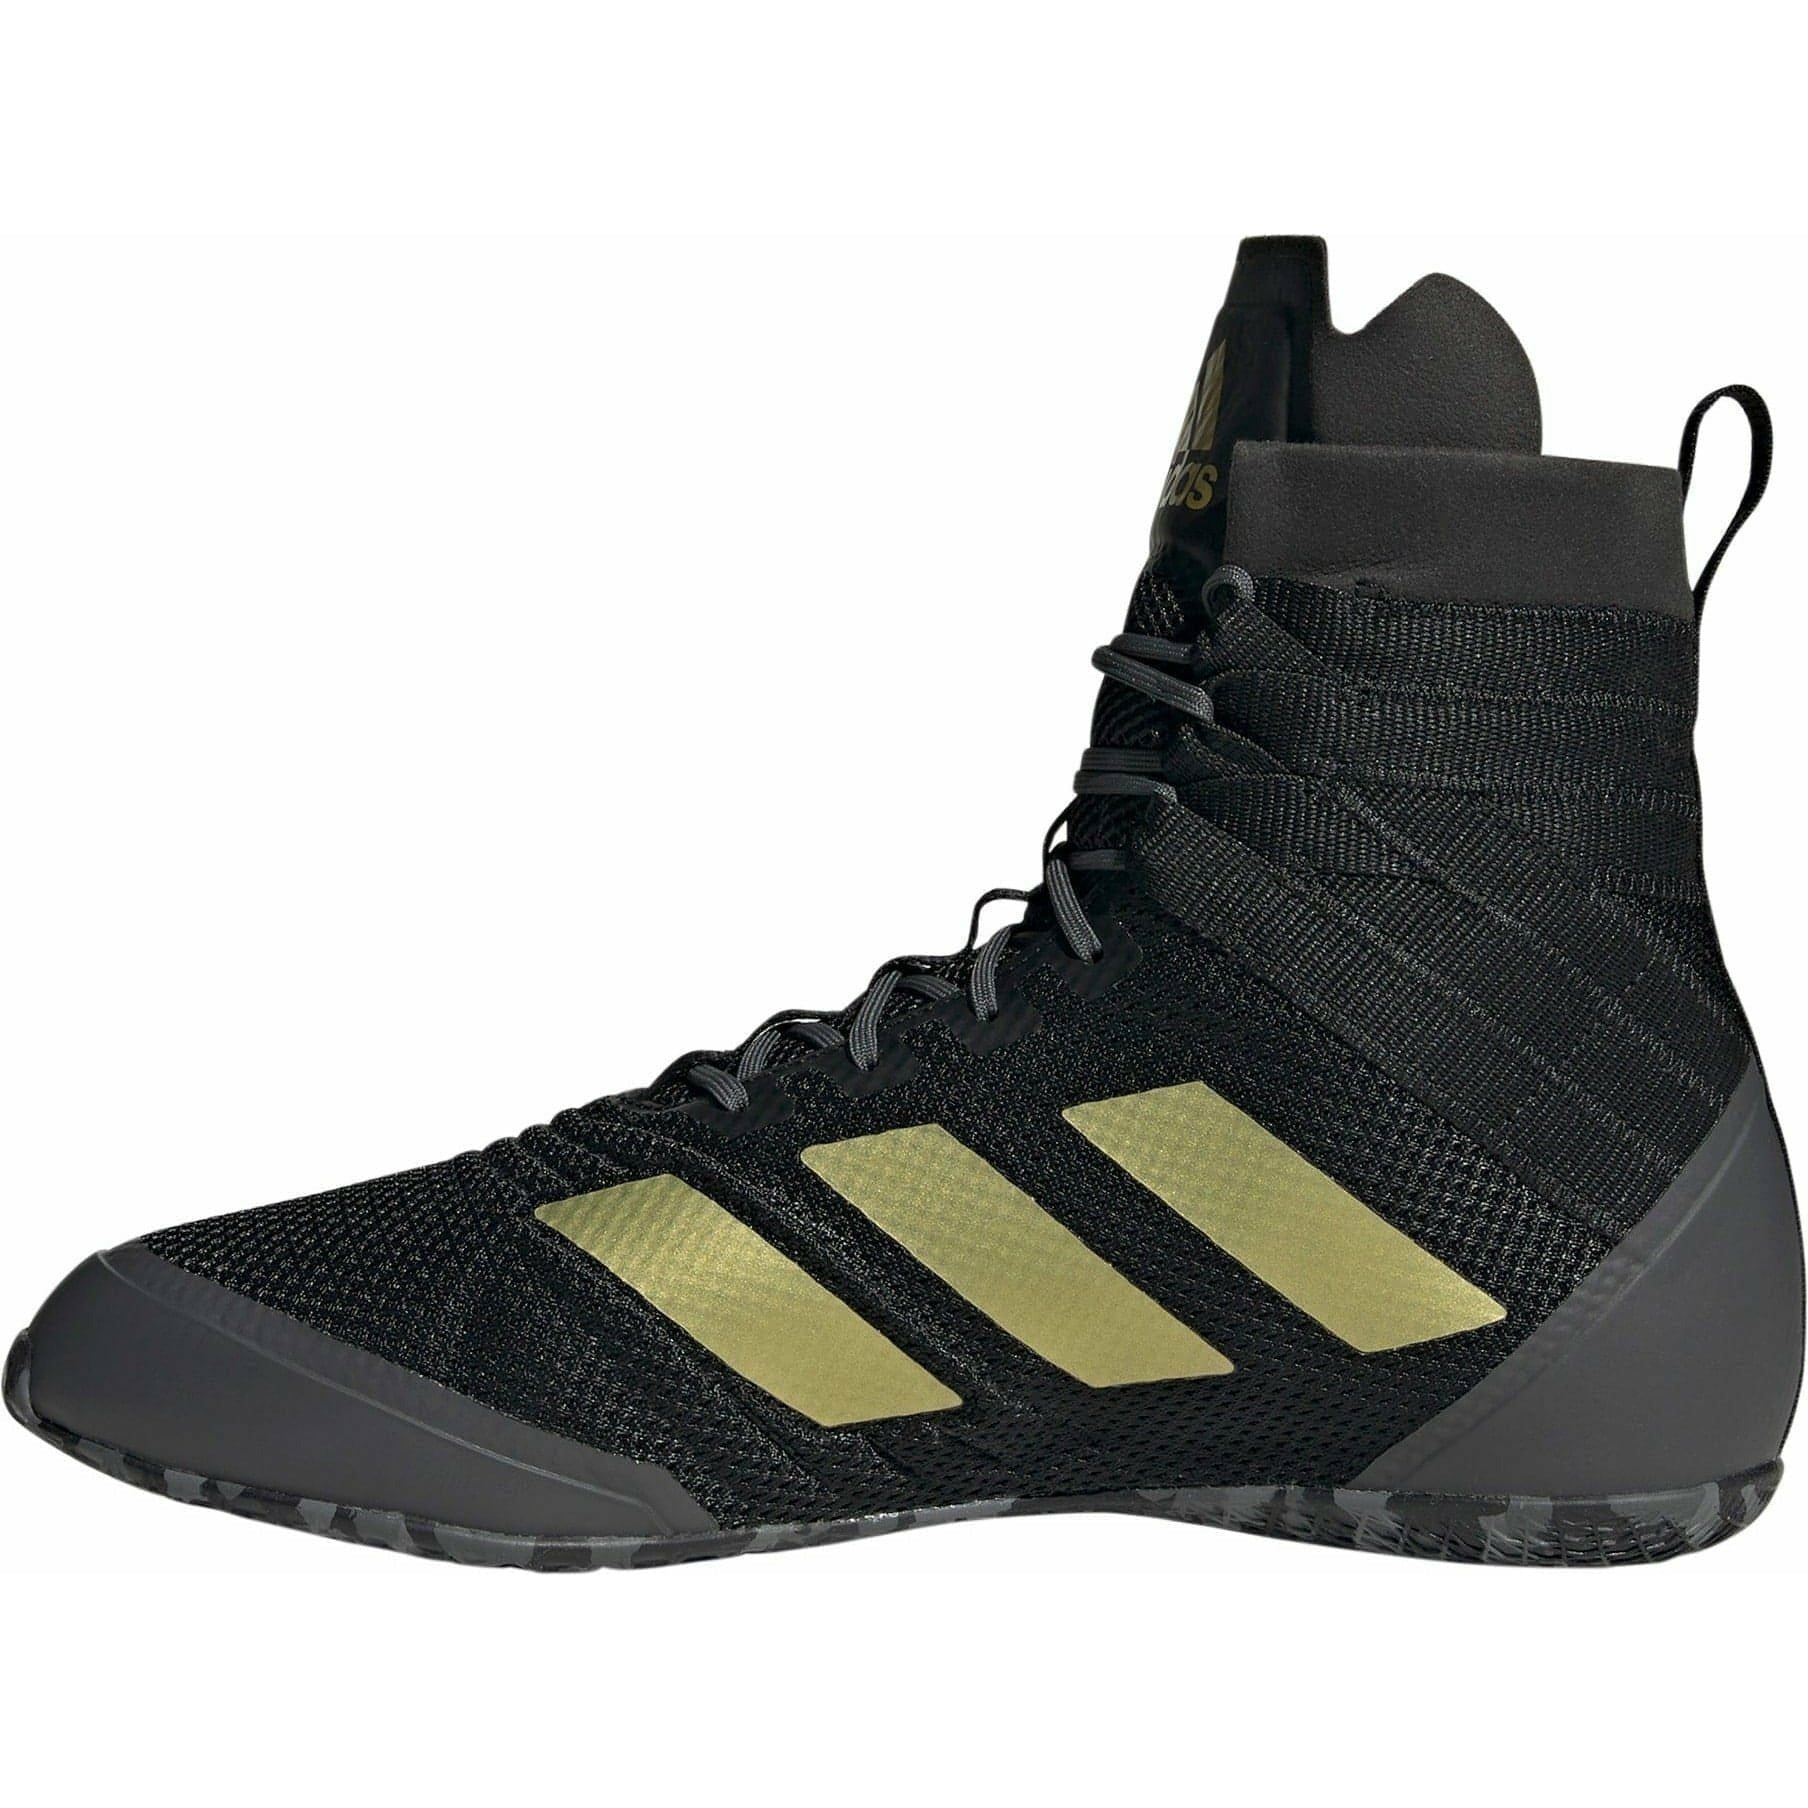 adidas Speedex 18 Mens Boxing Shoes - Black